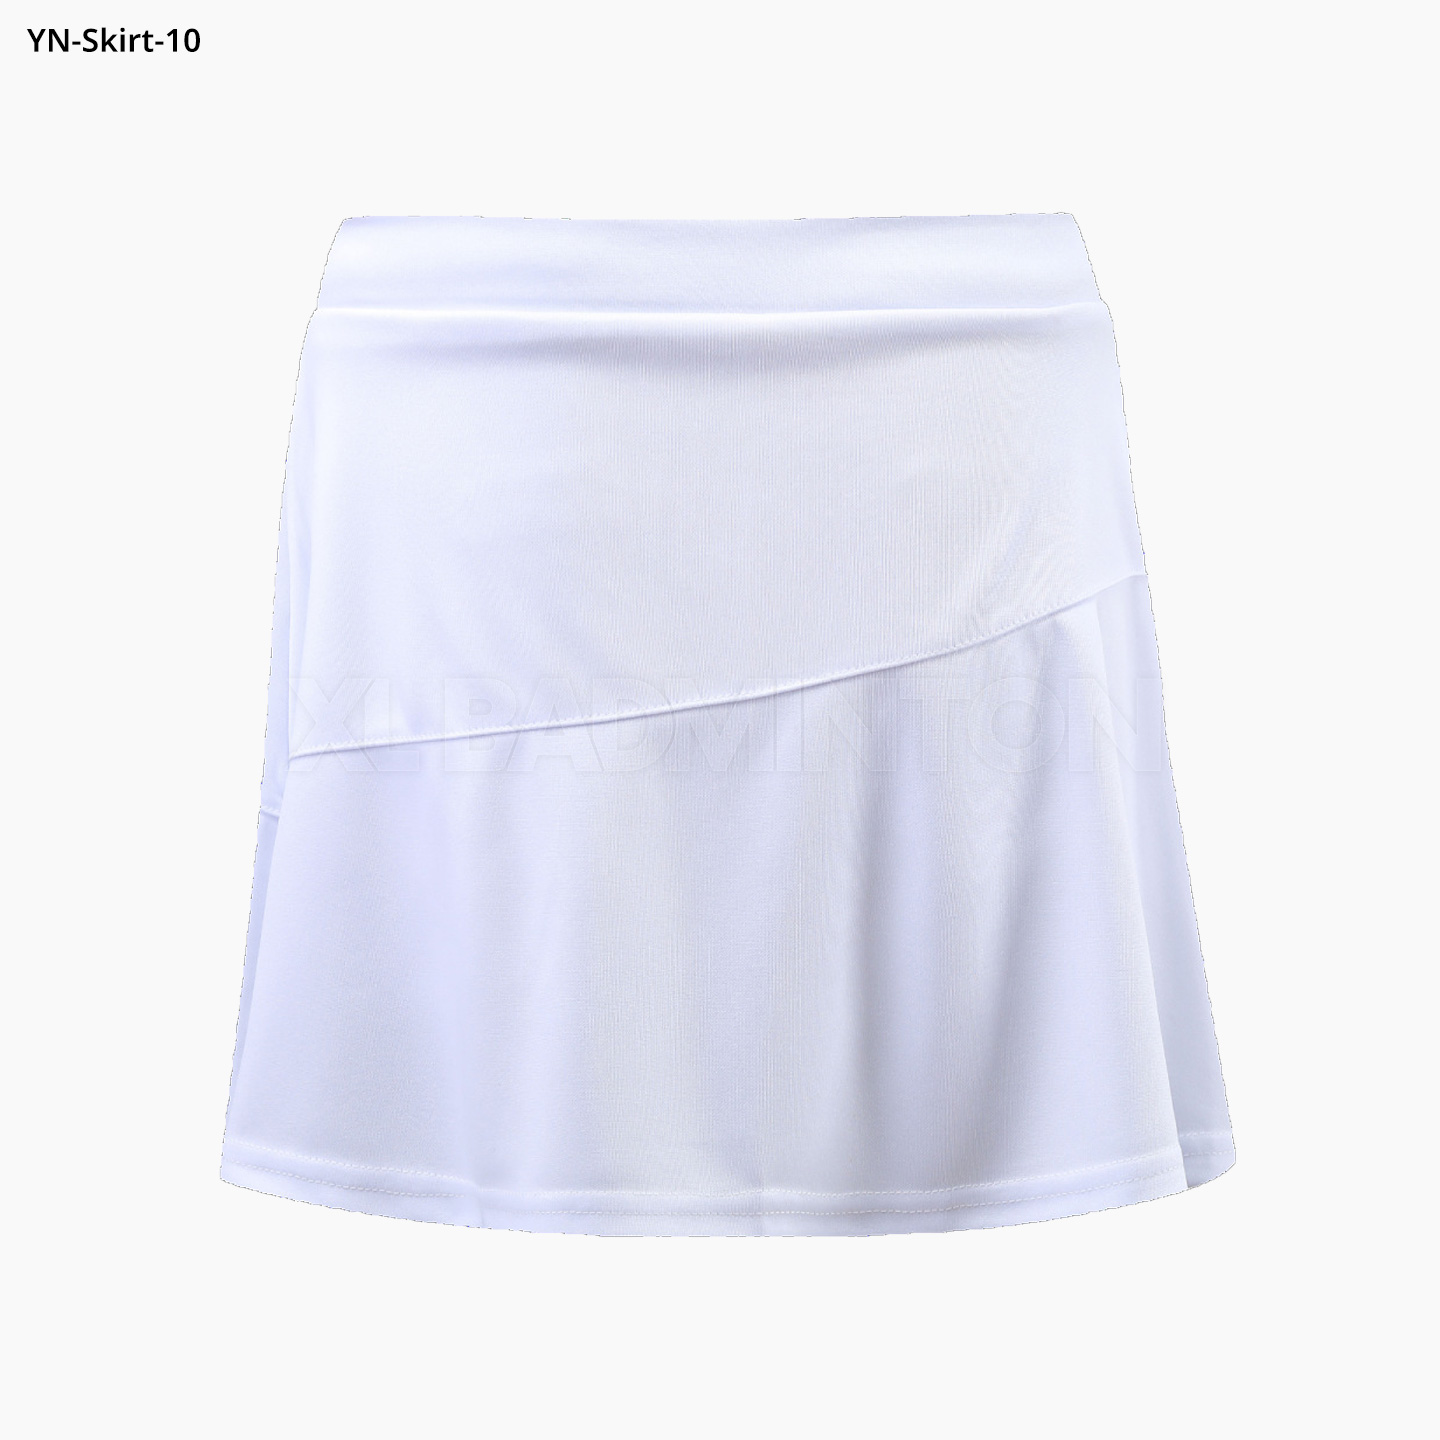 yn-skirt-10-white-2